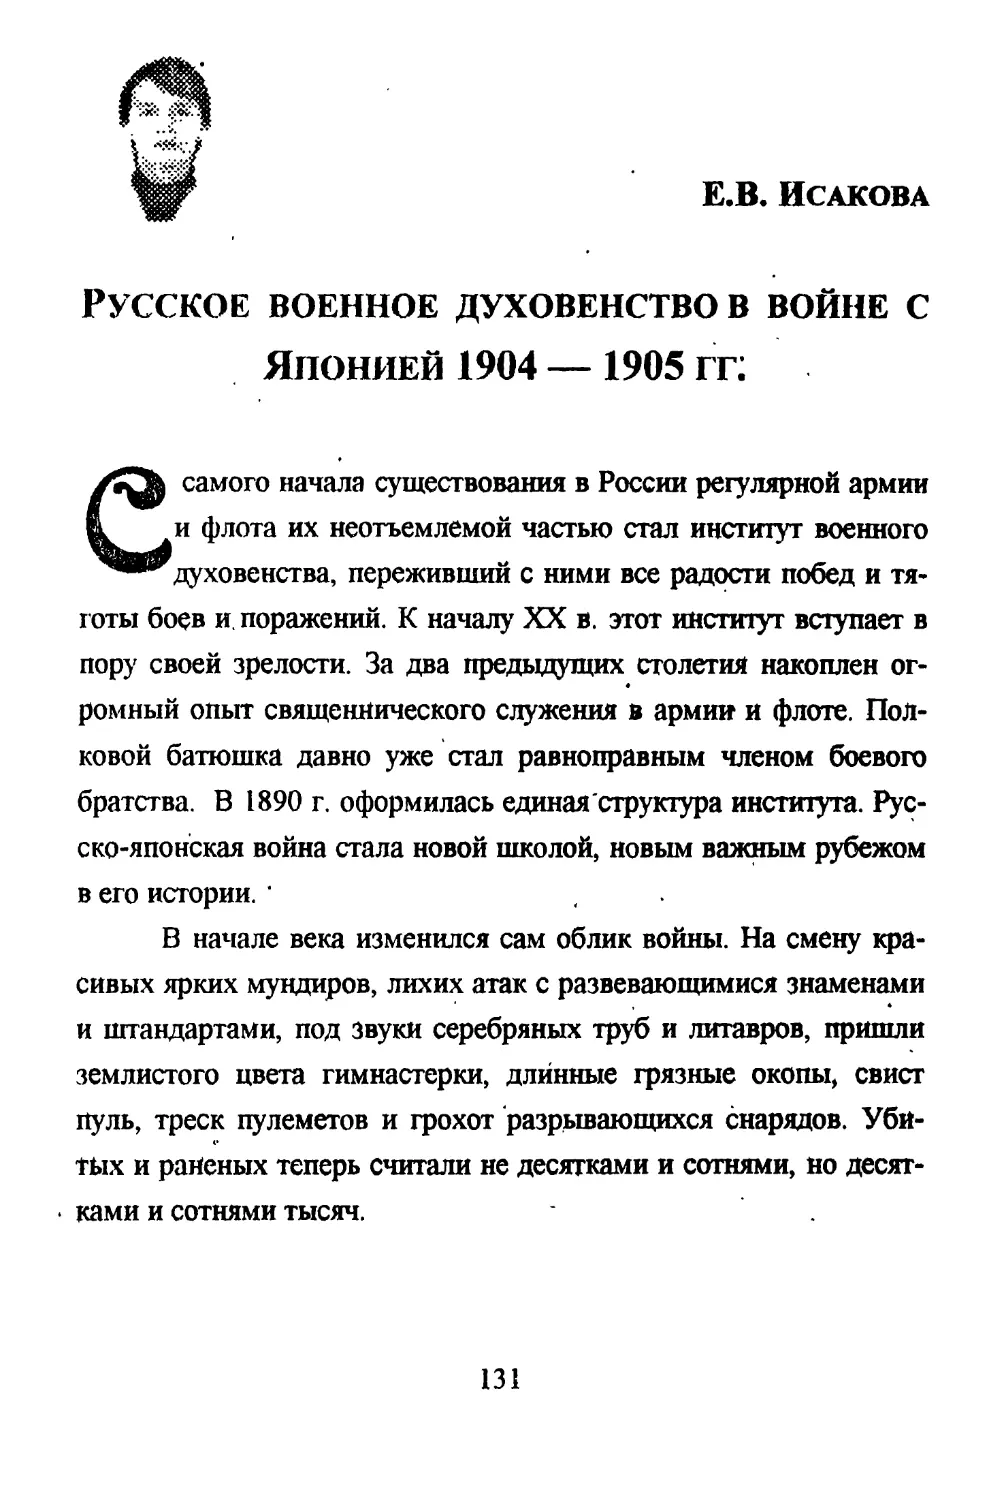 Исакова Е.В. Русское военное духовенство в войне с Японией 1904-1905 гг.